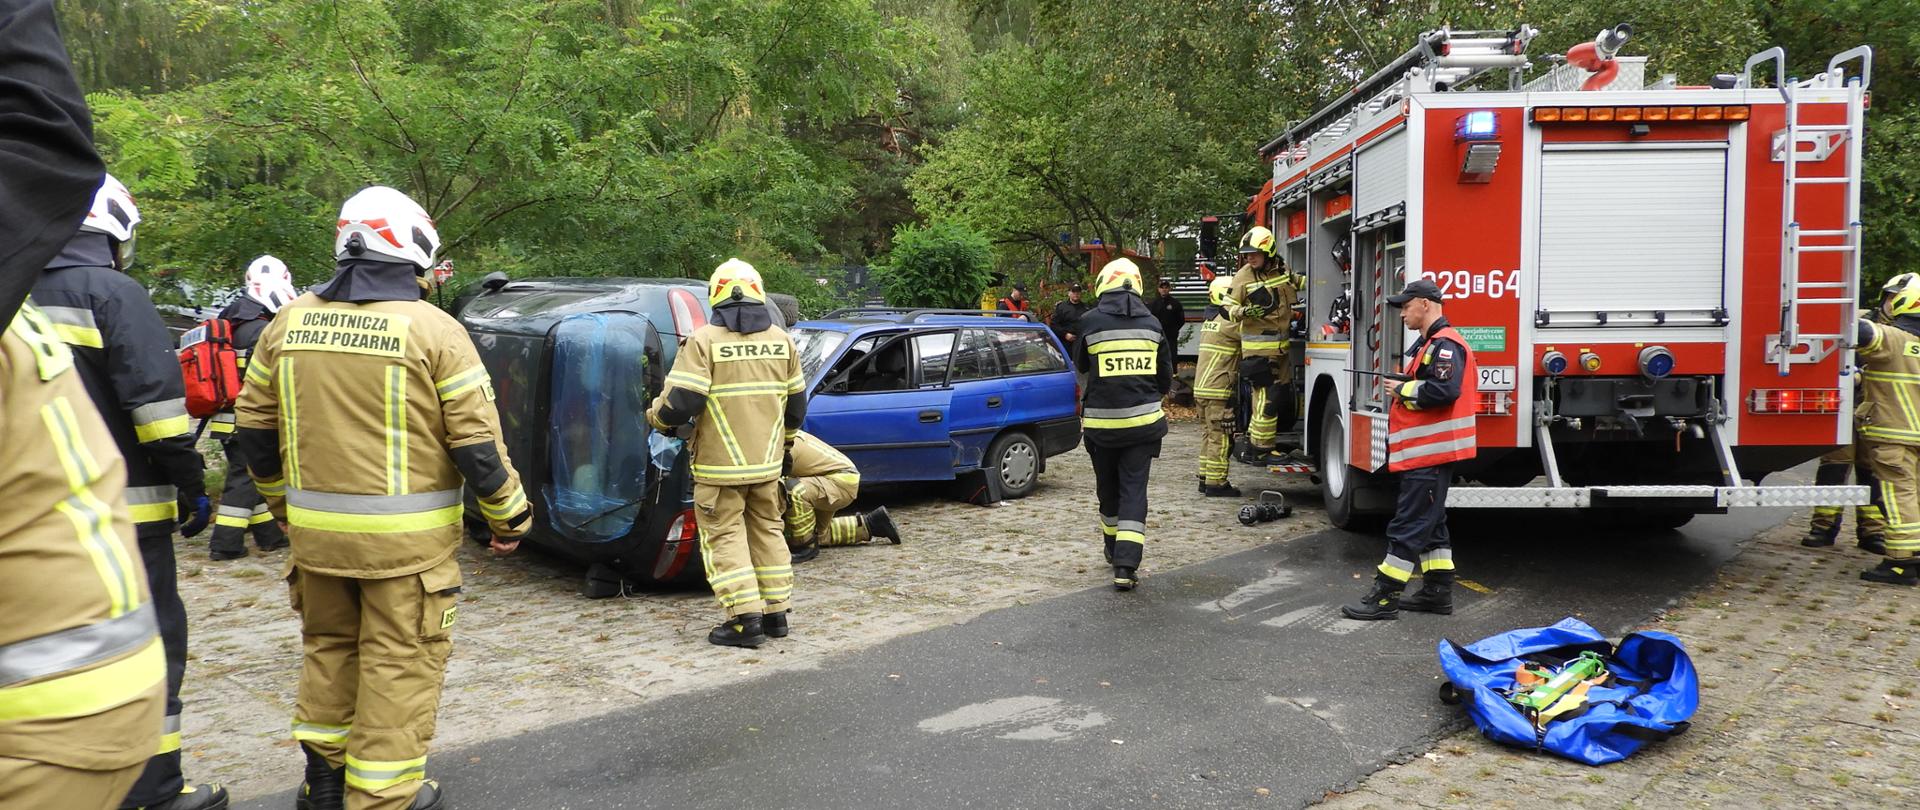 Upozorowany wypadek aut, strażacy ochotnicy ćwiczą jak w razie wypadku ratować poszkodowanych.